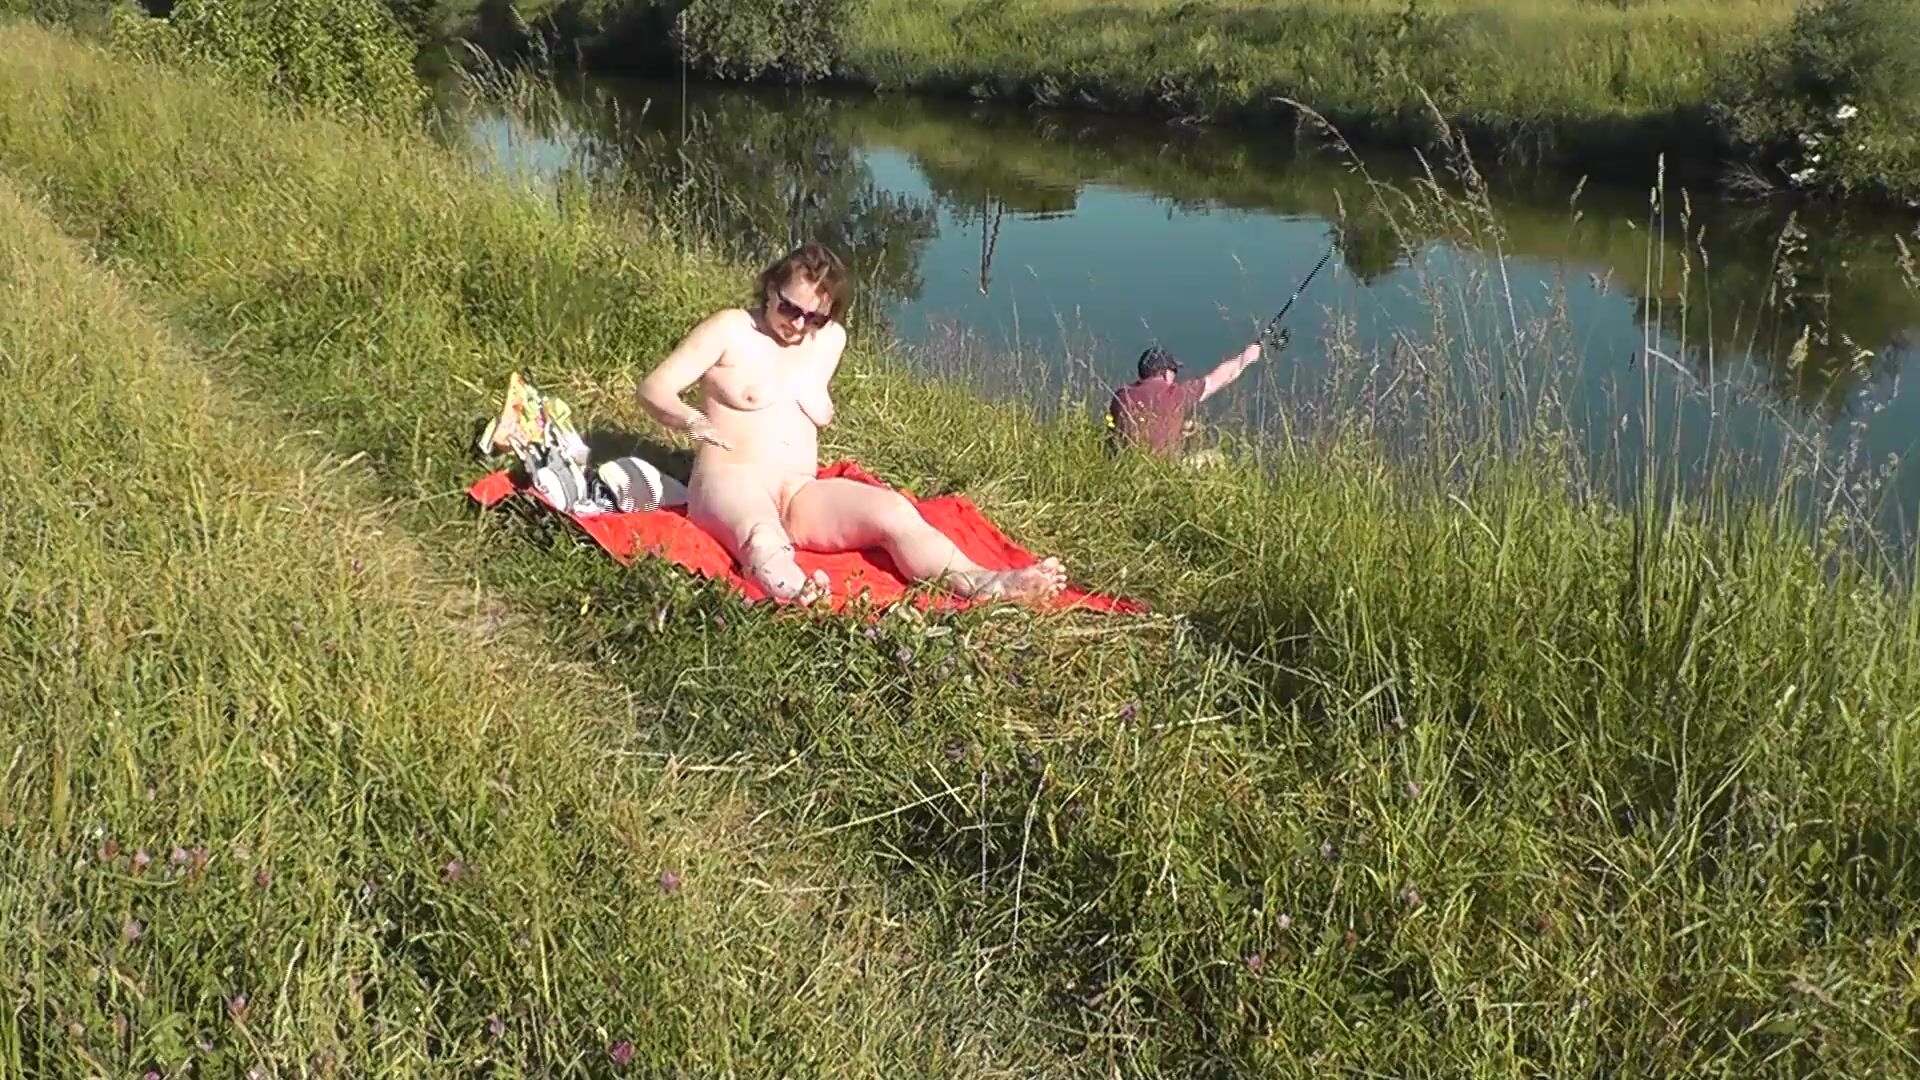 MILF сексуальная Фрина на берегу реки разделась и загорает голышом.  Случайный мужчина рыбак наблюдает за ней, и в конце концов решил  присоединиться к голой женщине. Дикий пляж. Нудистский пляж. Публичная  нагота. Публичное